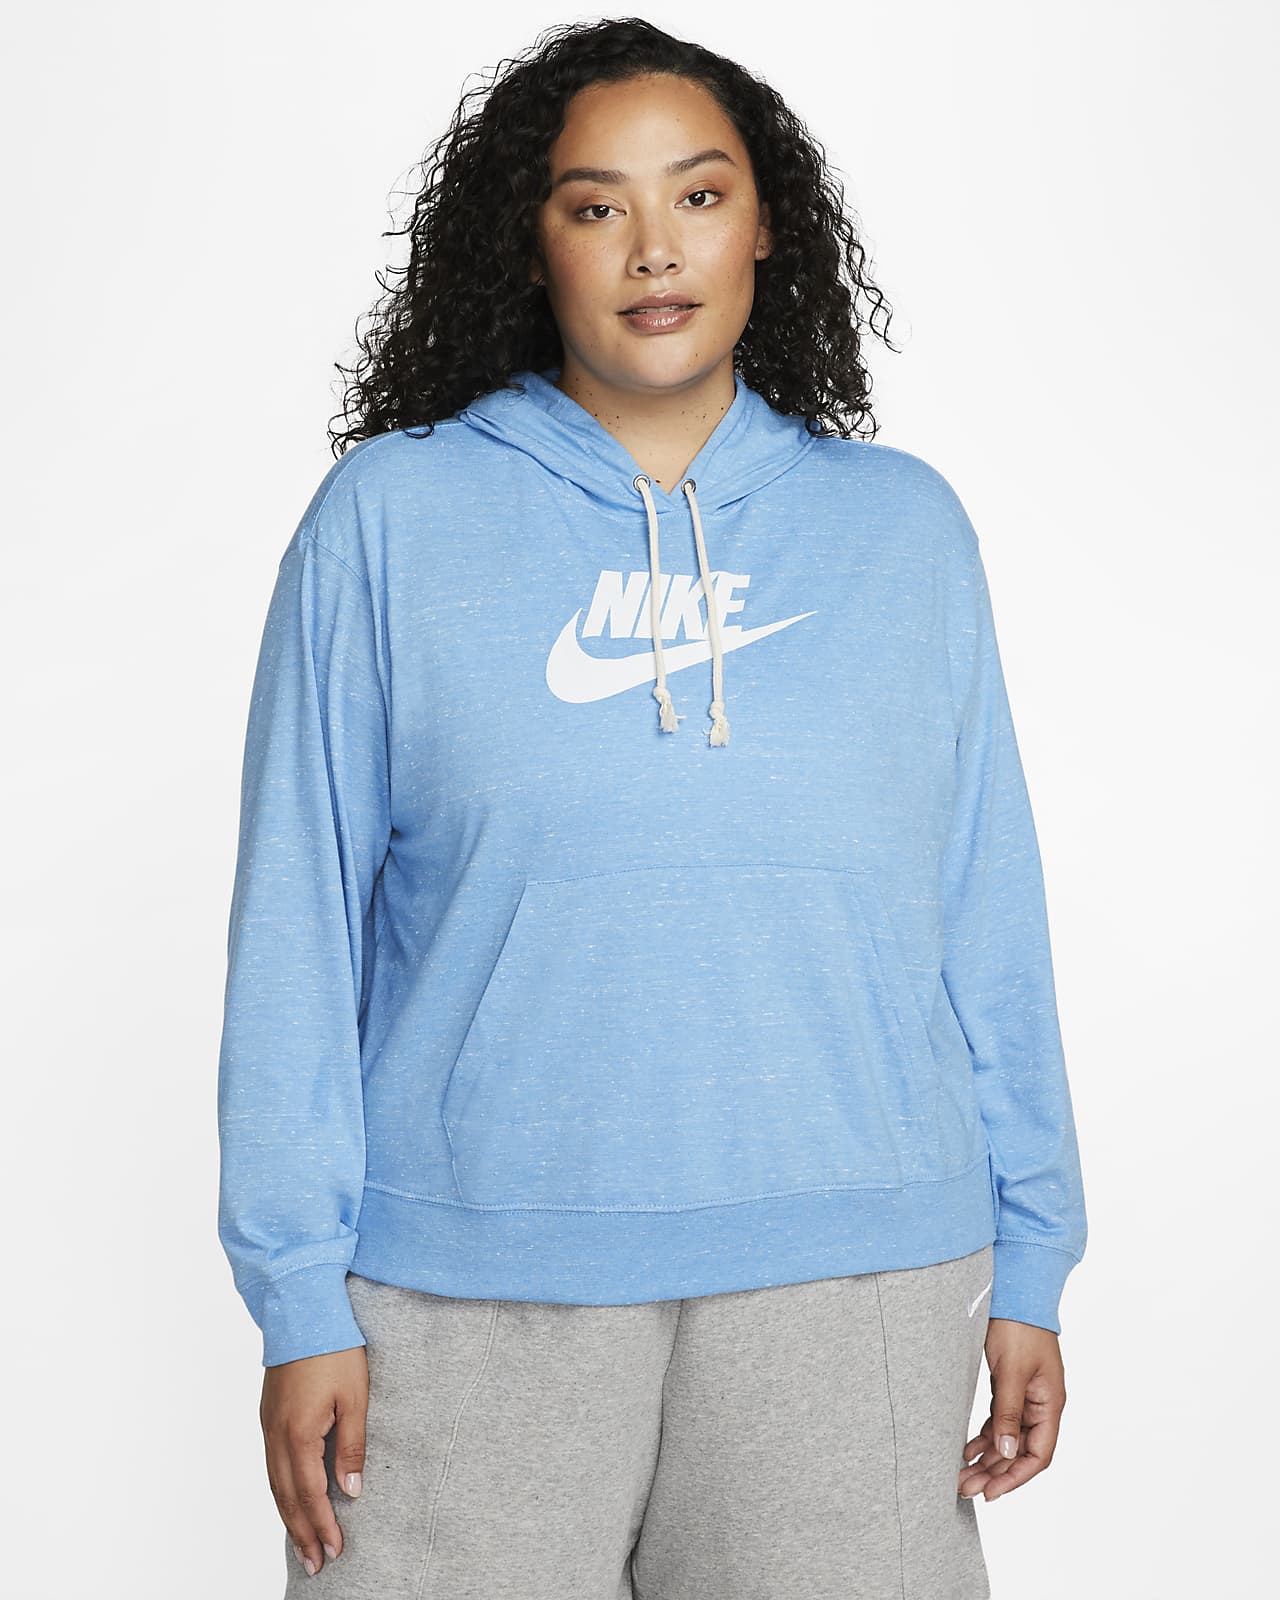 aprobar En lo que respecta a las personas lado Nike Sportswear Gym Vintage Women's Pullover Hoodie (Plus Size). Nike.com